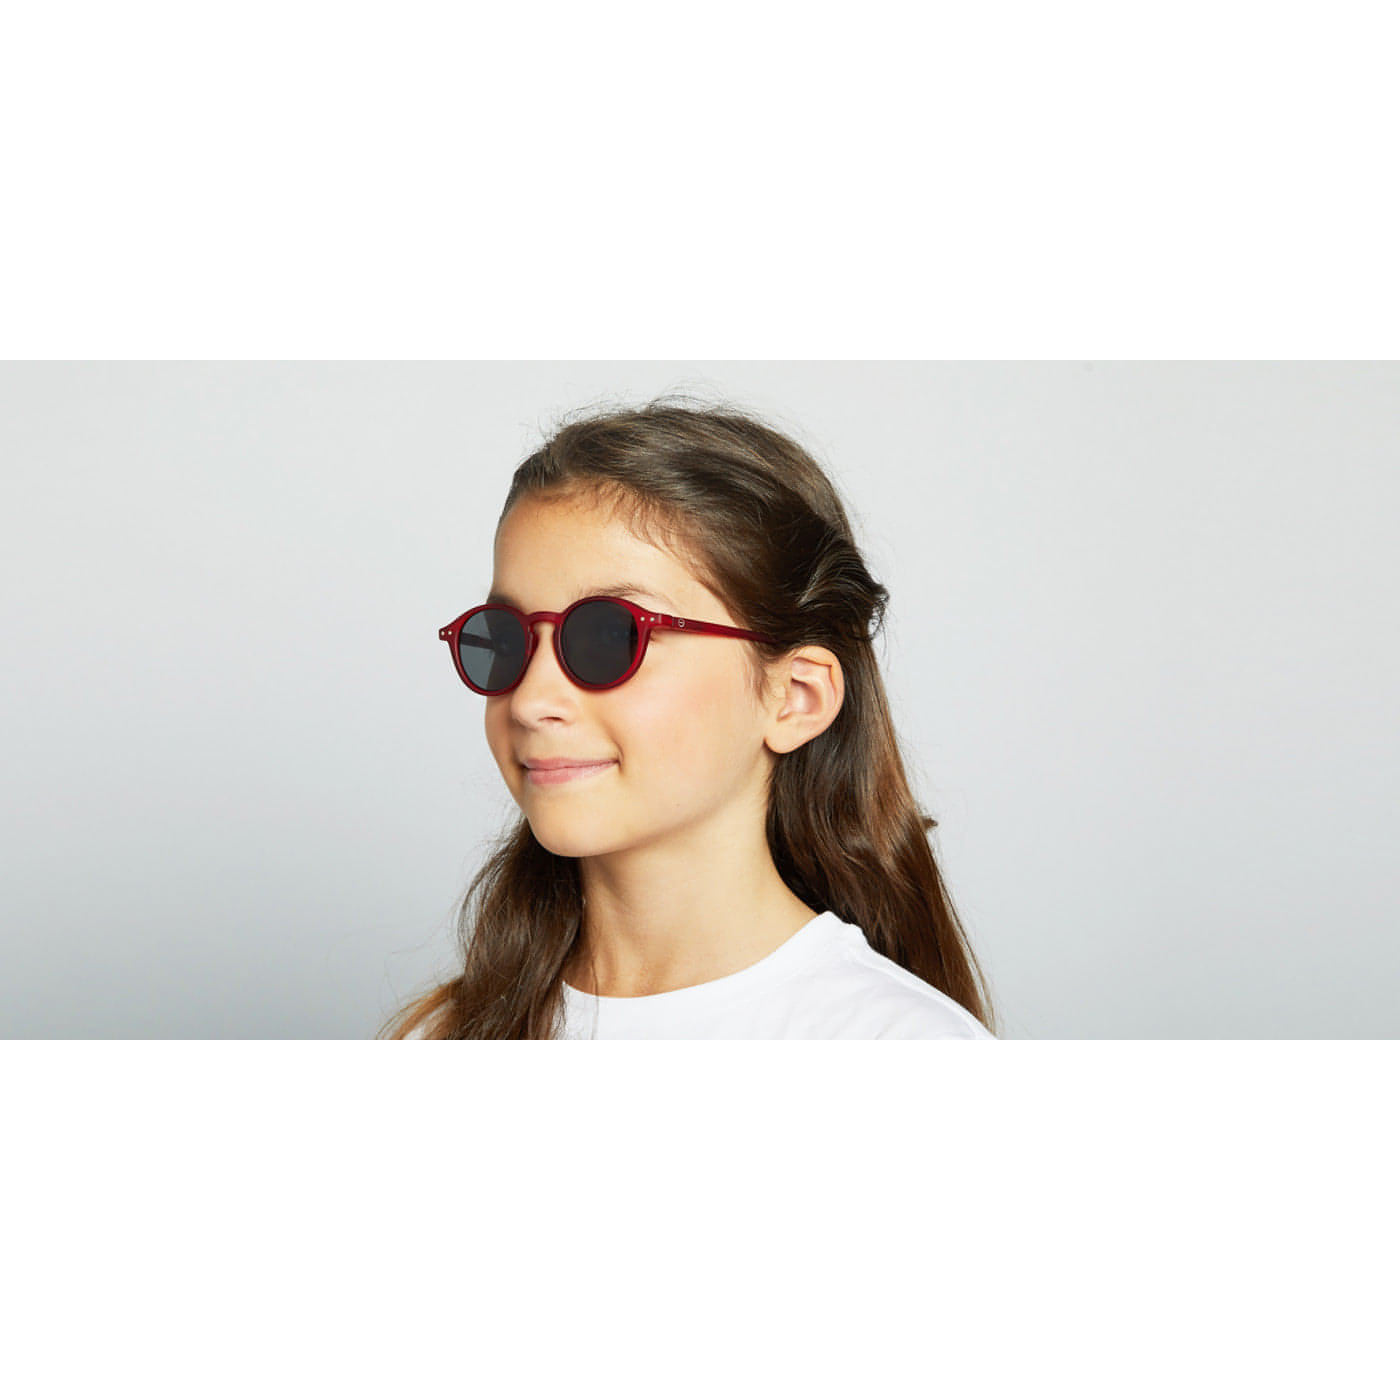 Óculos de Sol encarnados #D para crianças dos 5 aos 10 anos